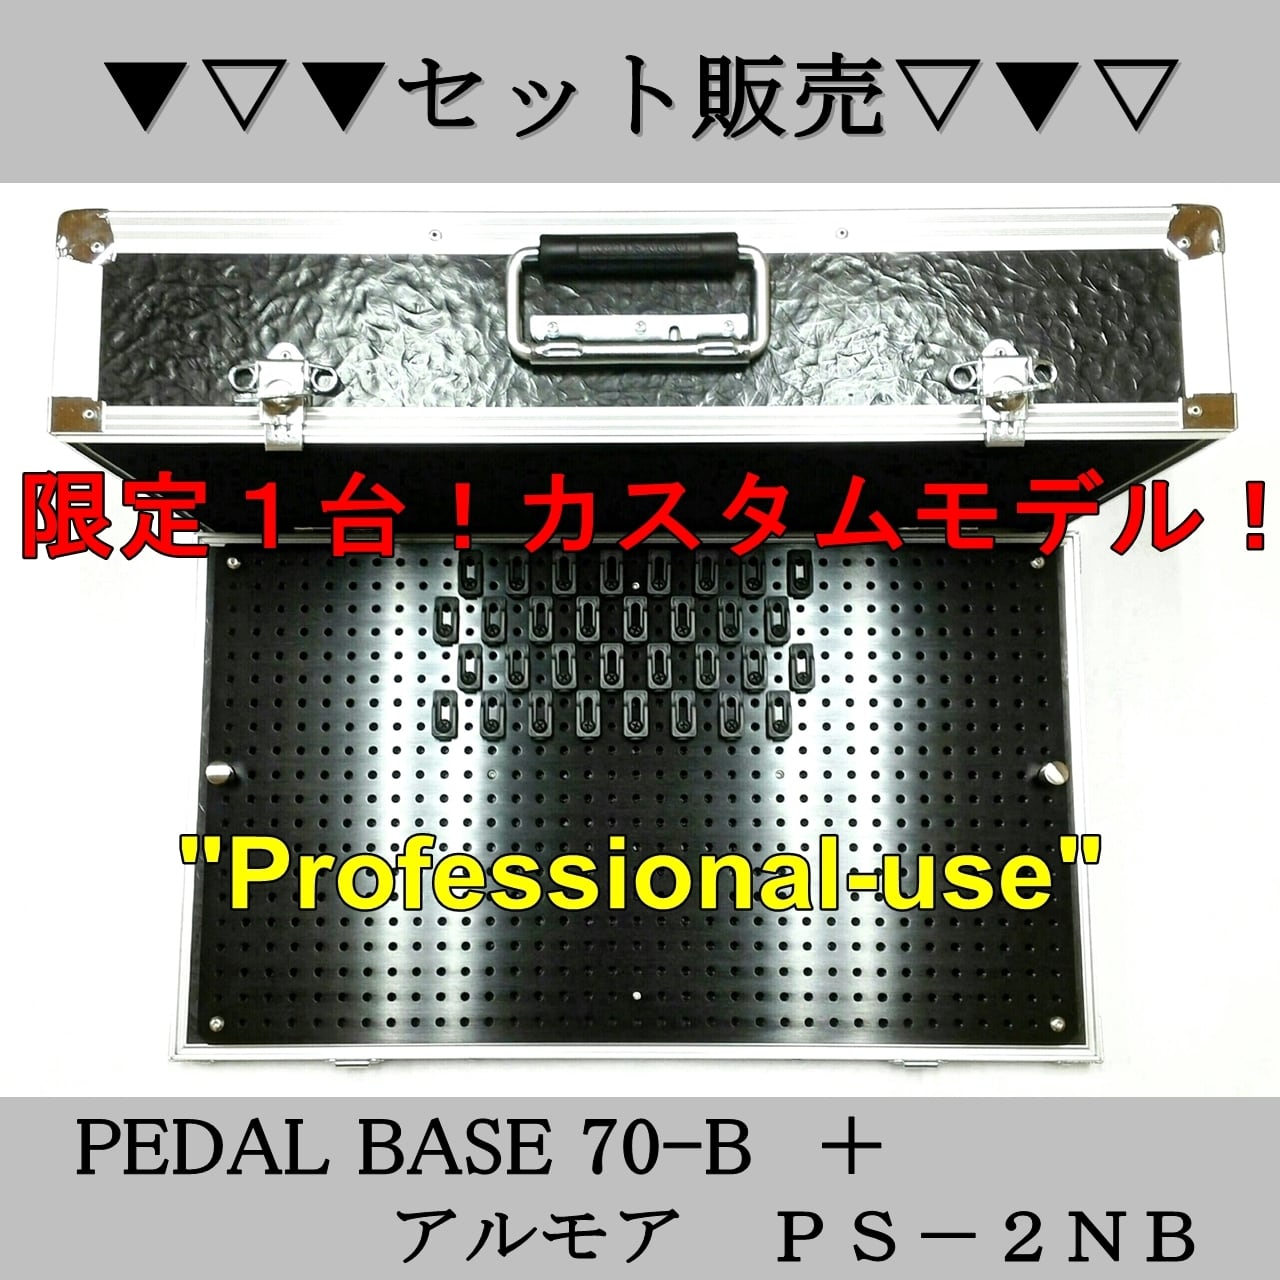 ハードケースとセット販売 PEDAL BASE 70-B ＋アルモア PS-2NB